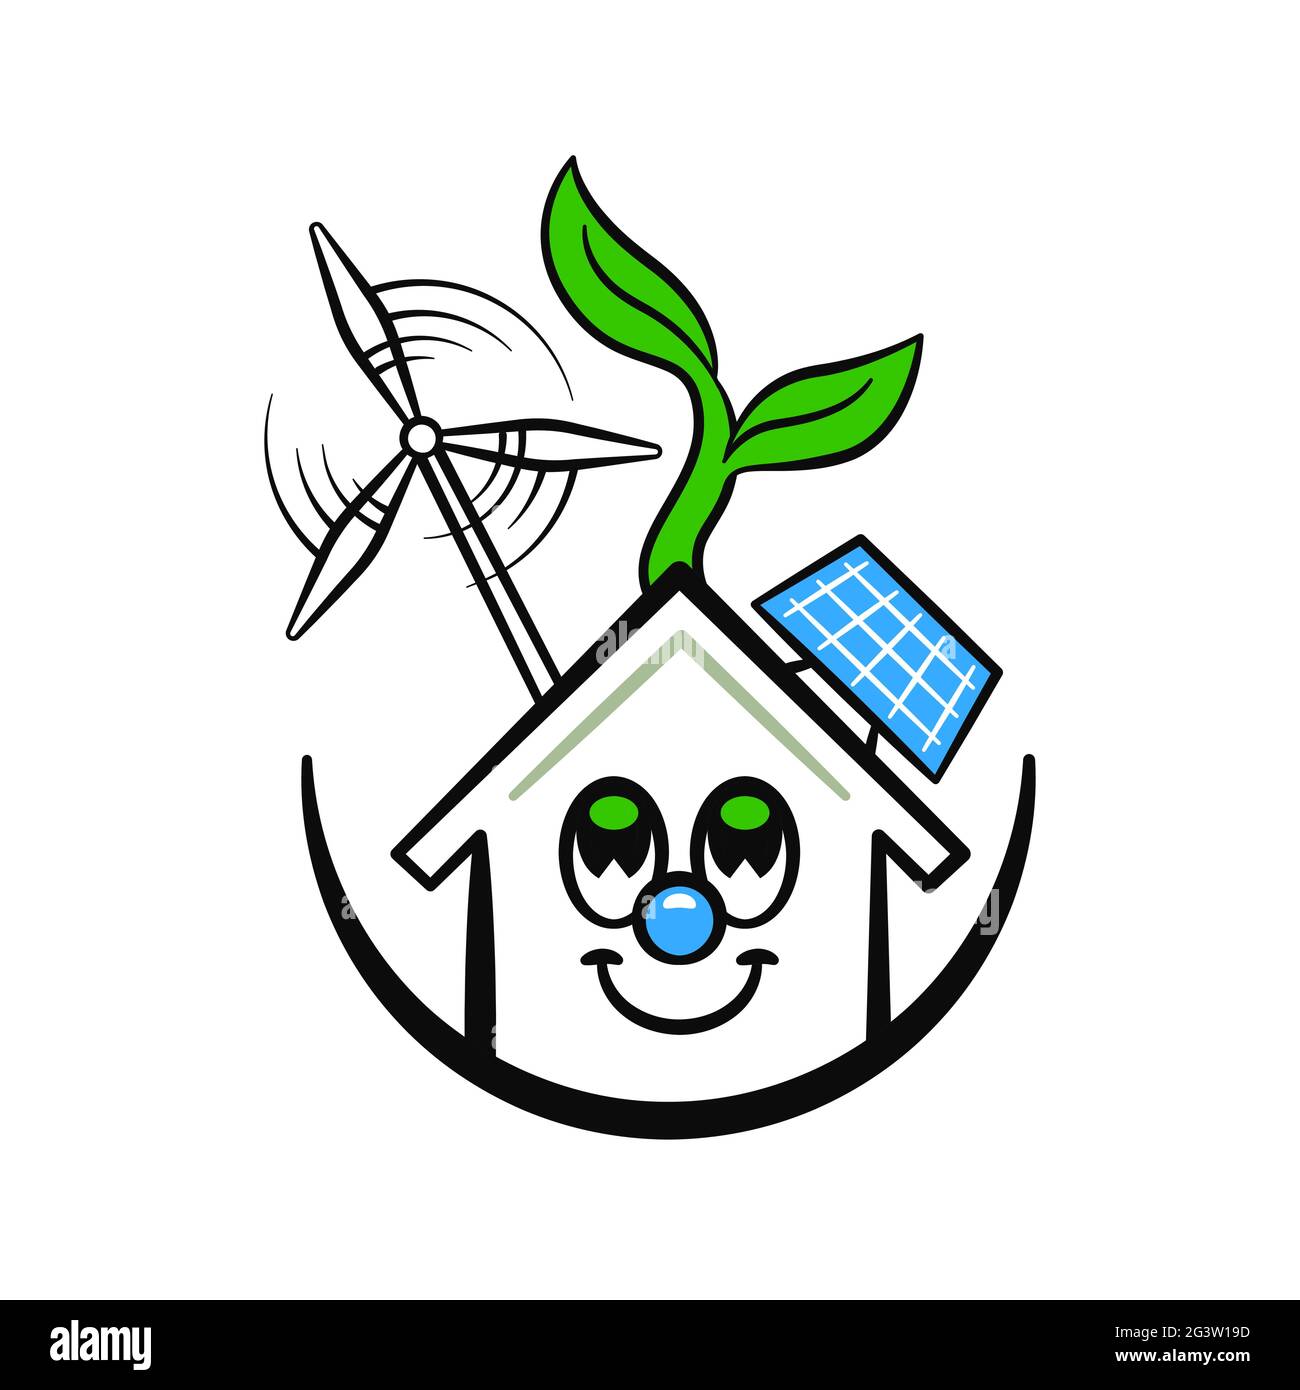 Concepto de ilustración de casa ecológica. Gracioso lindo personaje de dibujos animados de hogar verde moderno con tecnología de energía limpia sobre fondo blanco aislado. Ilustración del Vector